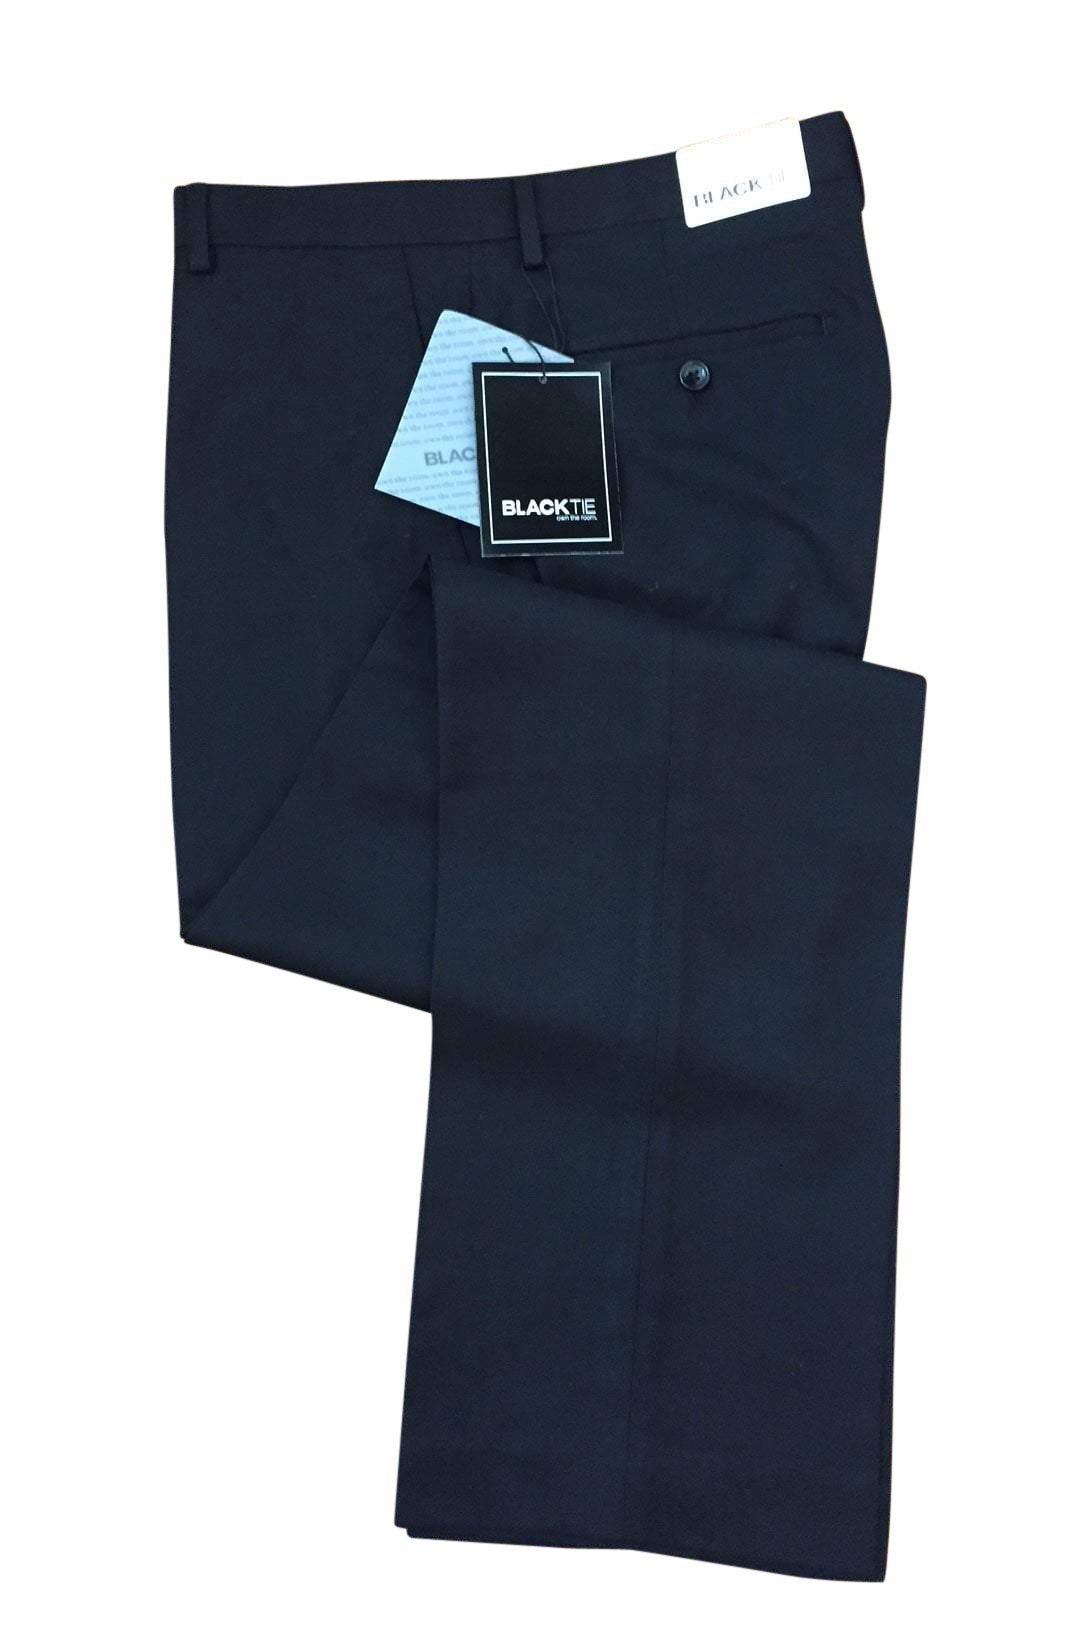 Bradley Black Luxury Wool Blend Suit Pants - Unhemmed - 28 /